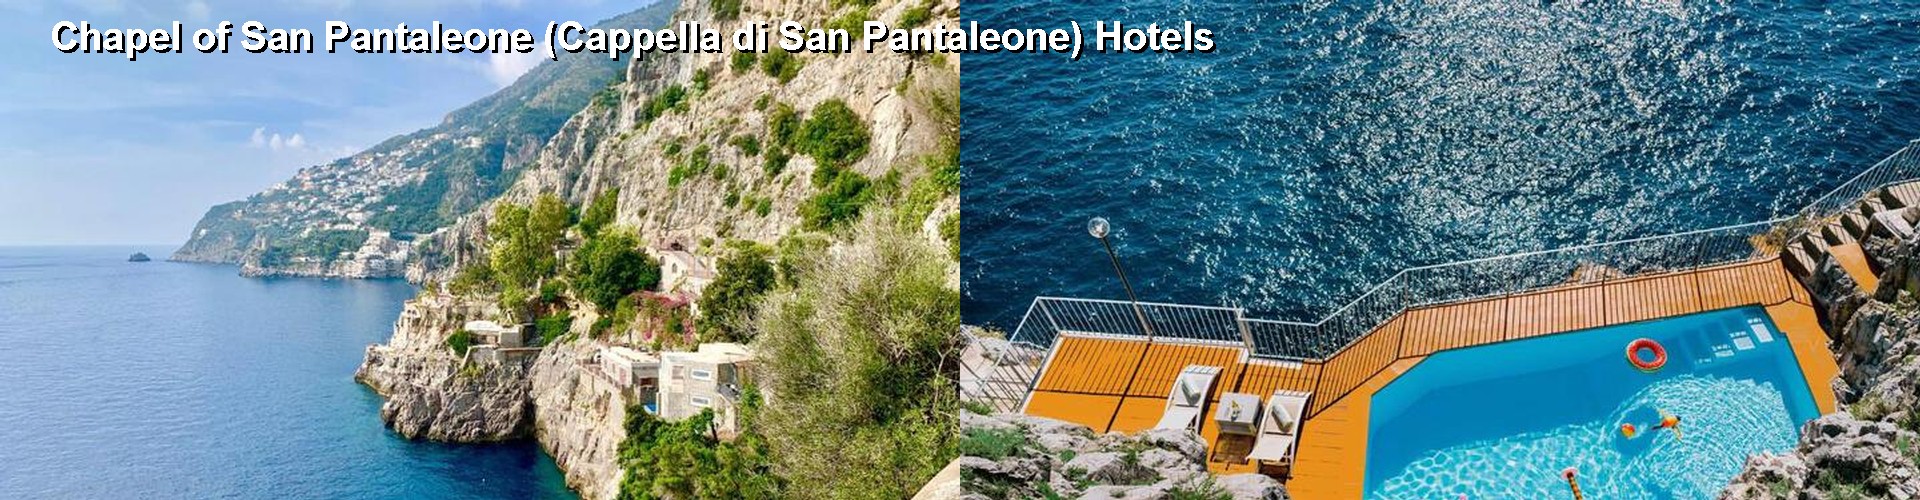 5 Best Hotels near Chapel of San Pantaleone (Cappella di San Pantaleone)